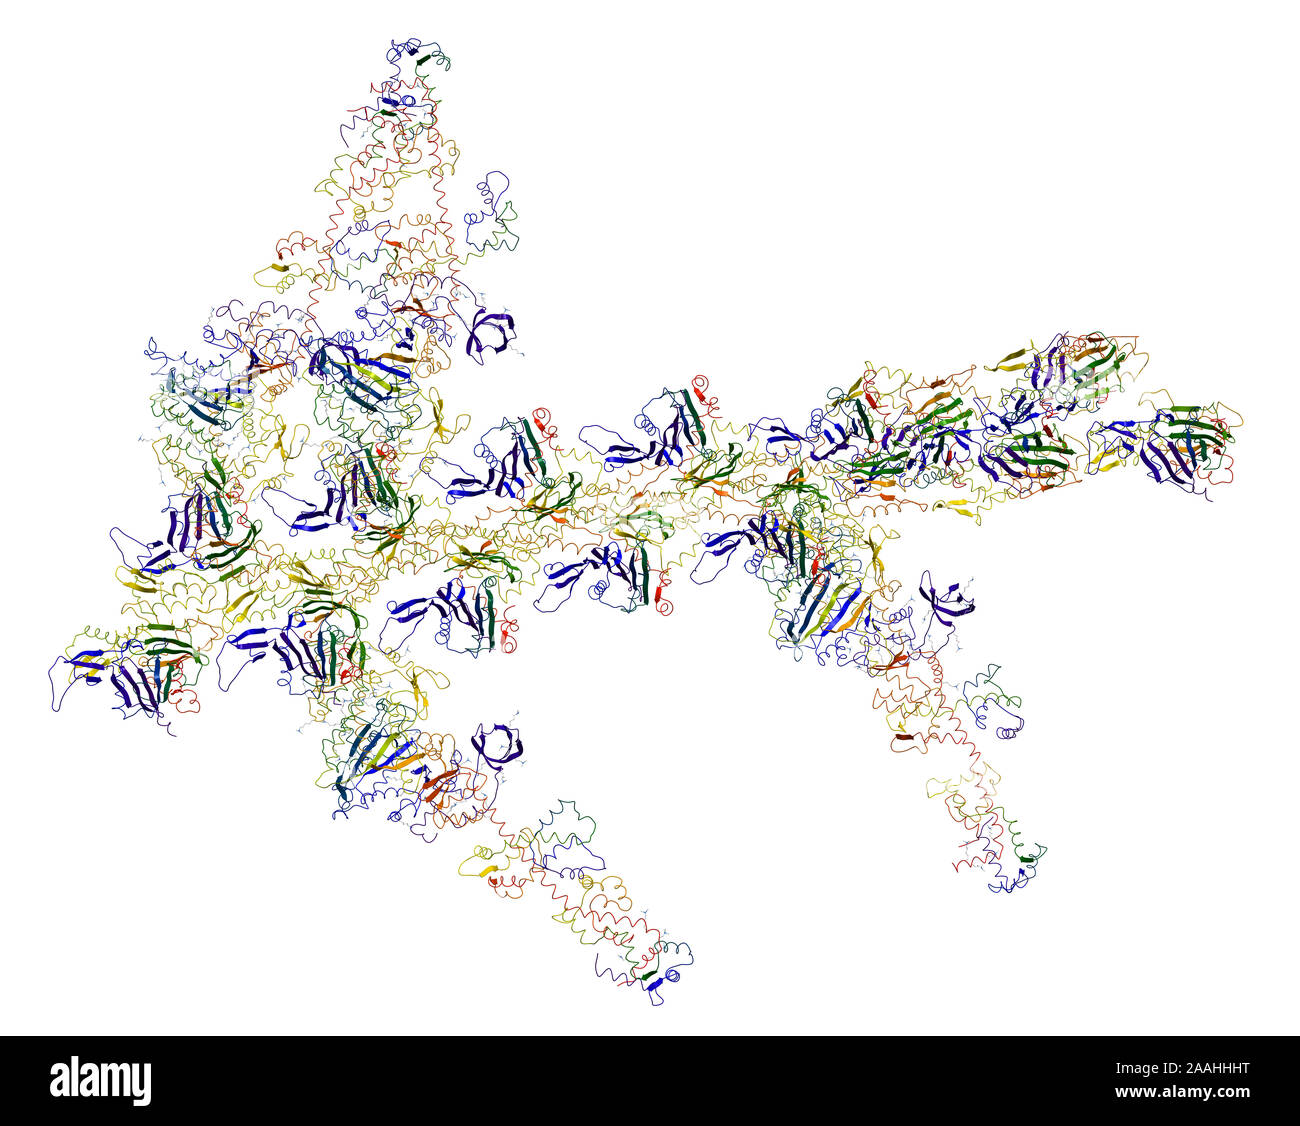 Motore molecolare: miosine di actina e provocare contrazioni muscolari Foto Stock